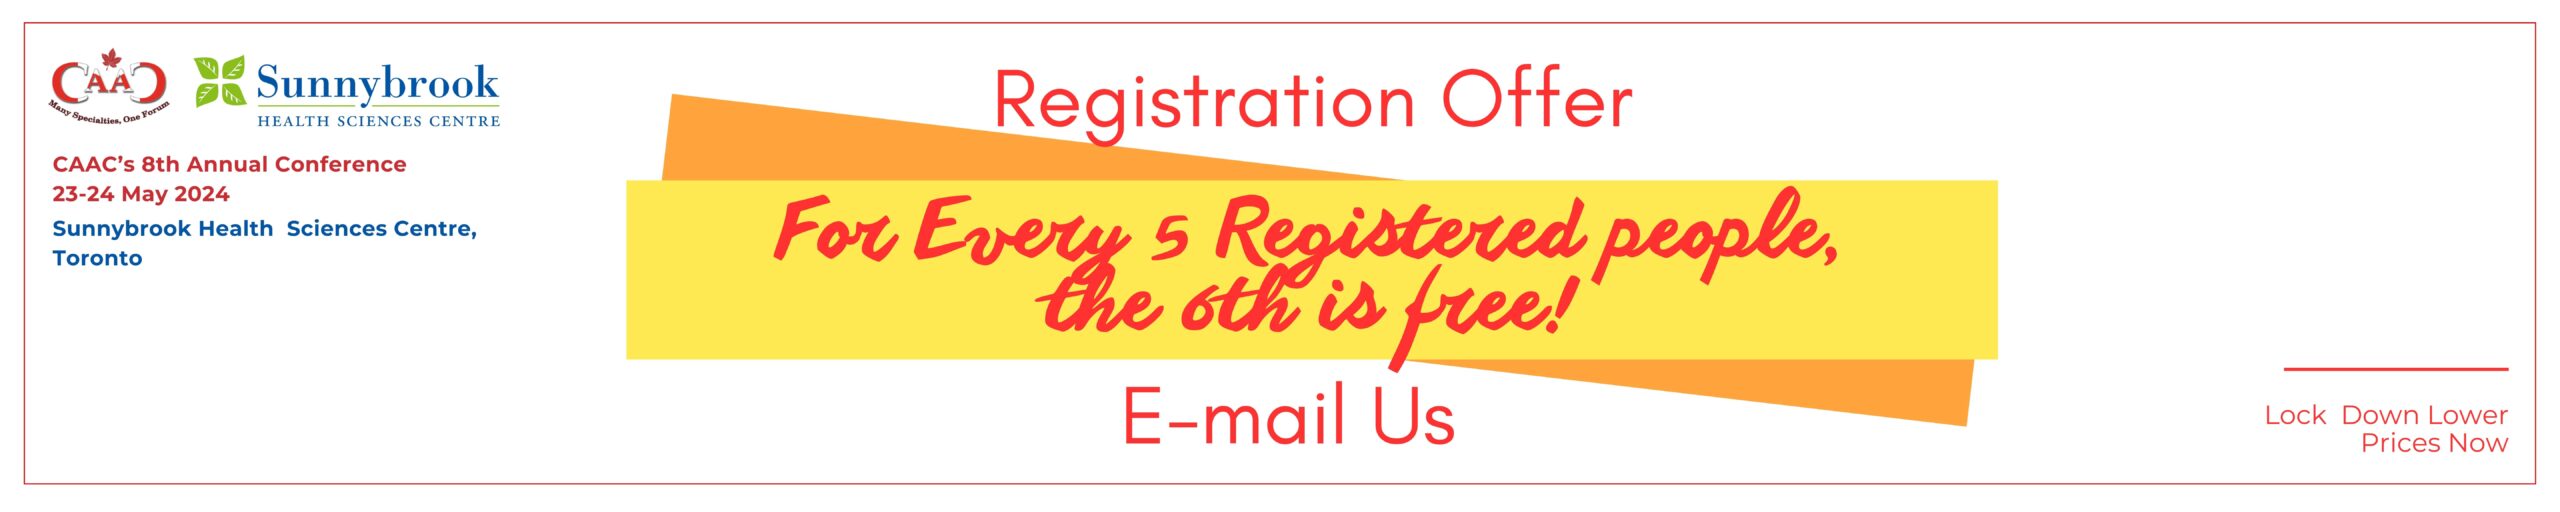 registration offer